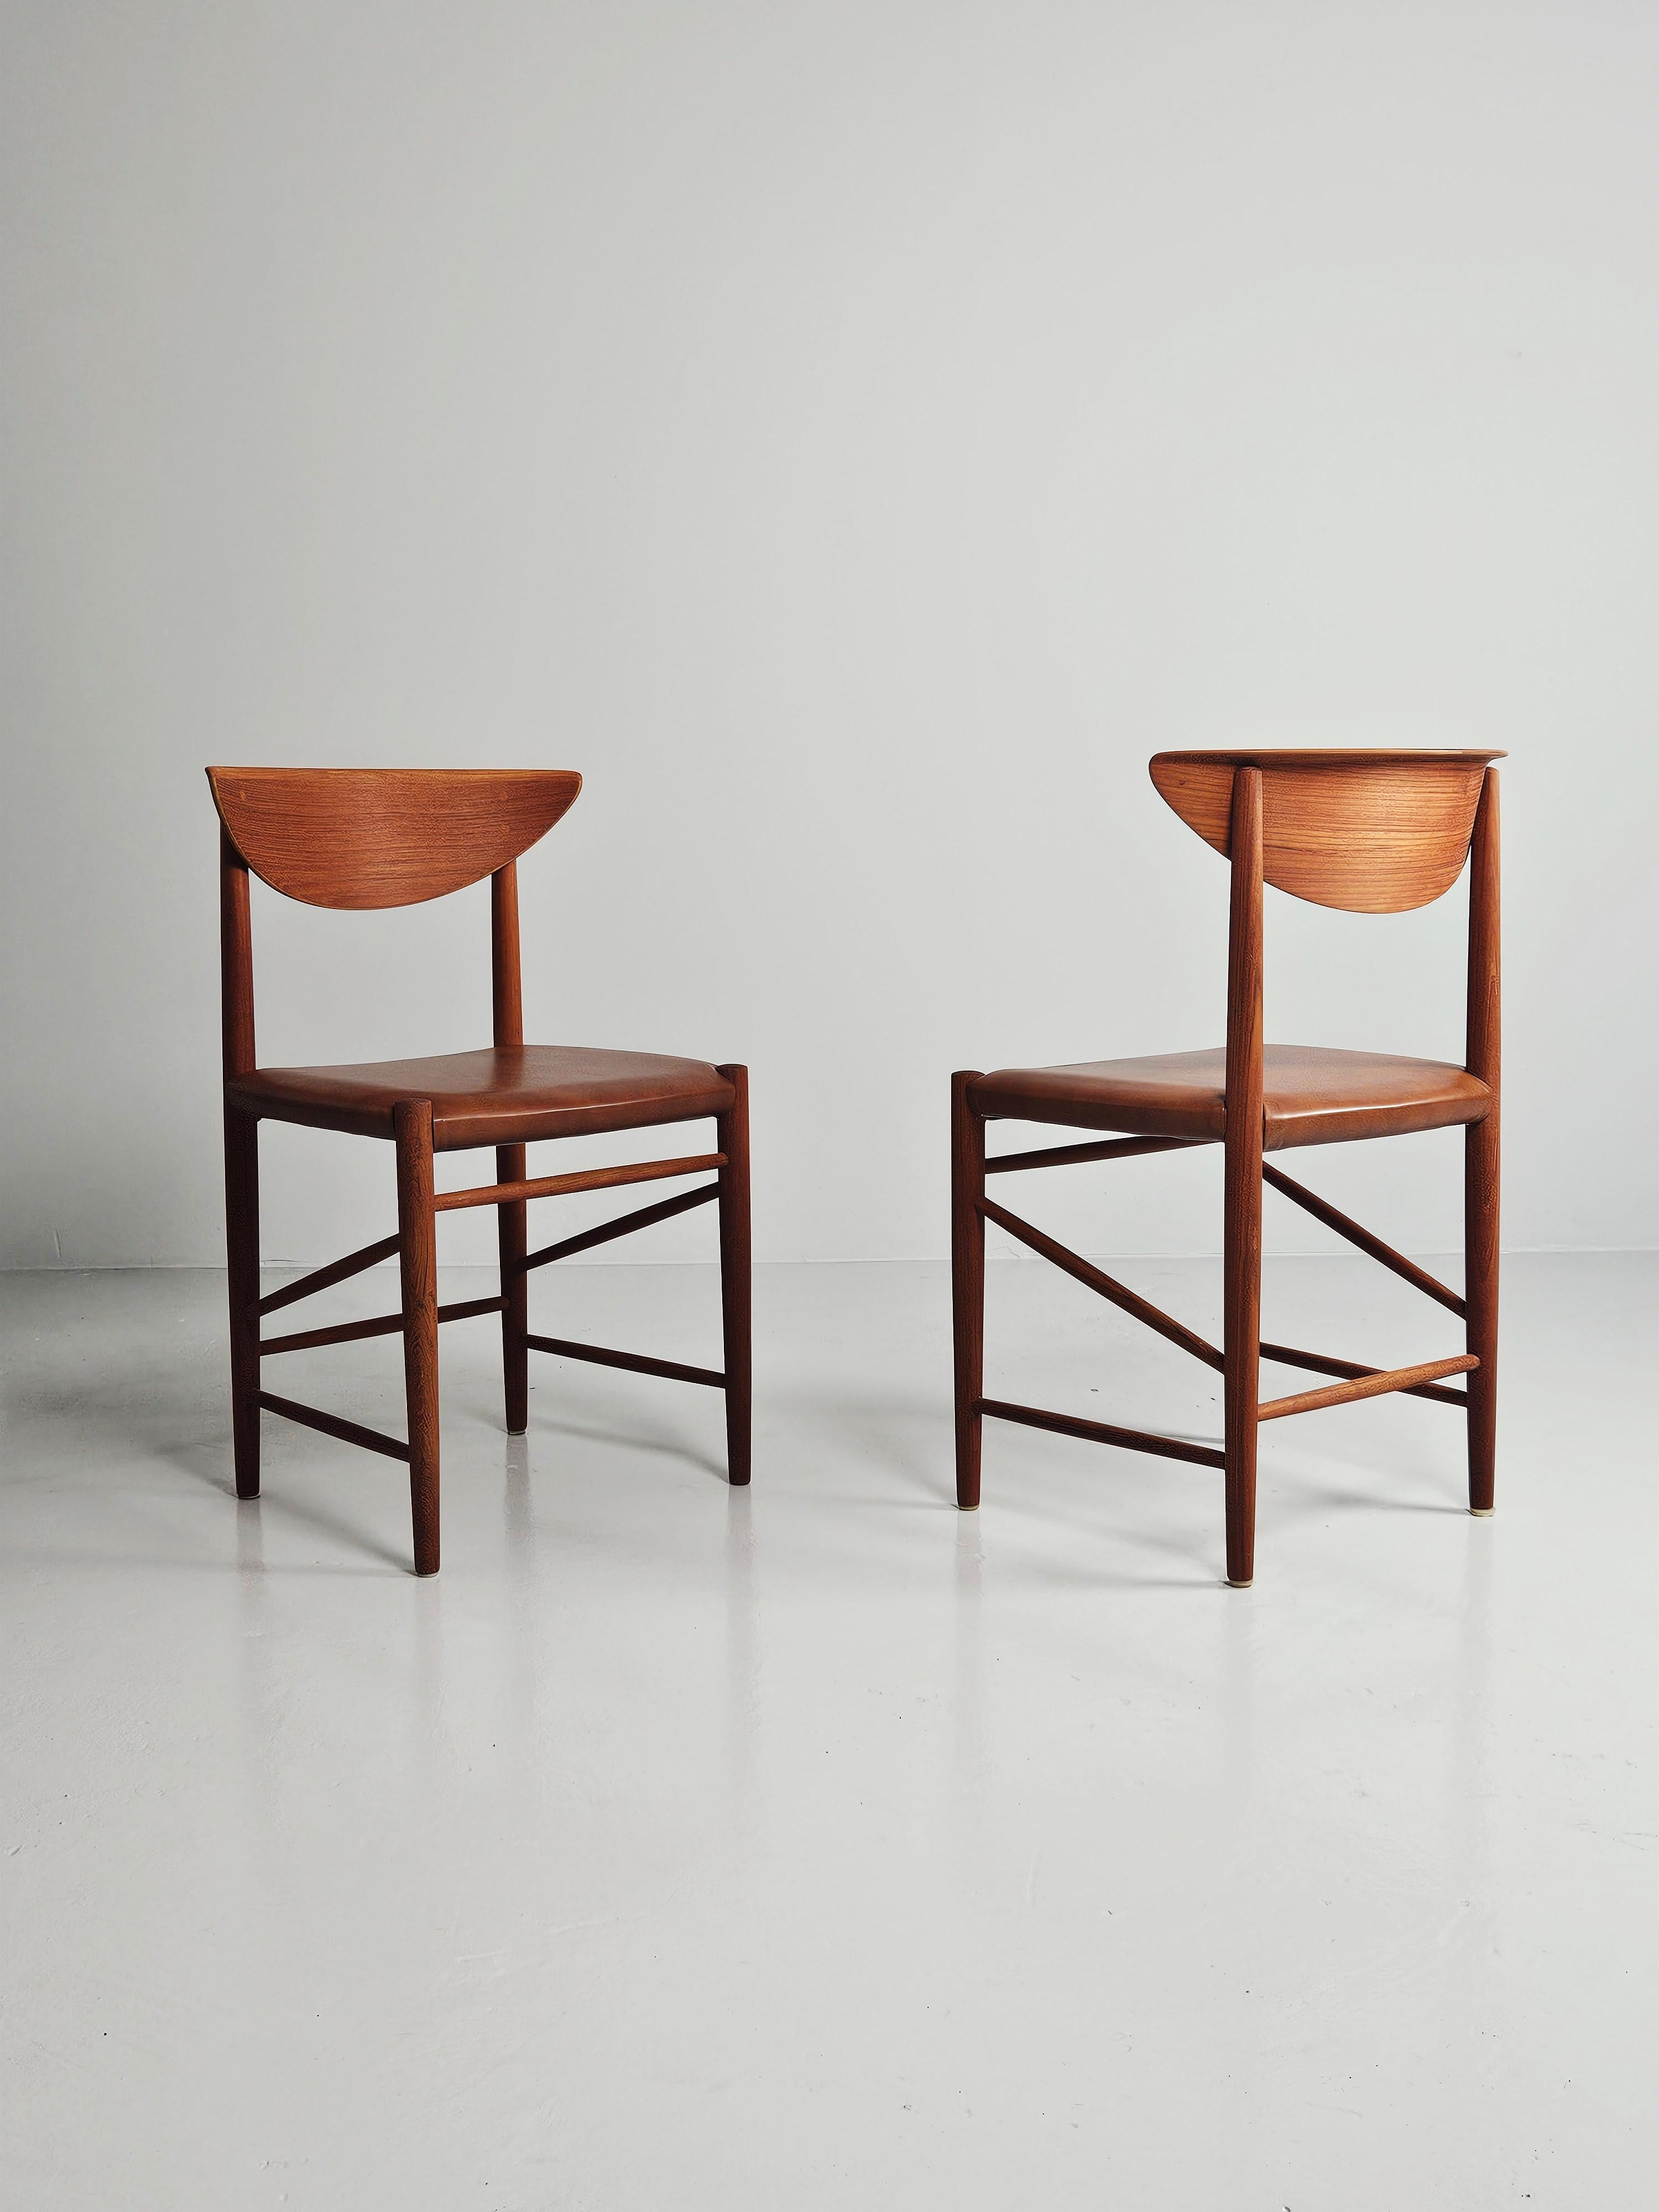 Schöner Satz von sechs Esszimmerstühlen 'Modell 316', entworfen von Peter Hvidt in Dänemark im Jahr 1955. 

Hergestellt aus Teakholz mit Sitzen aus cognacfarbenem Leder. 